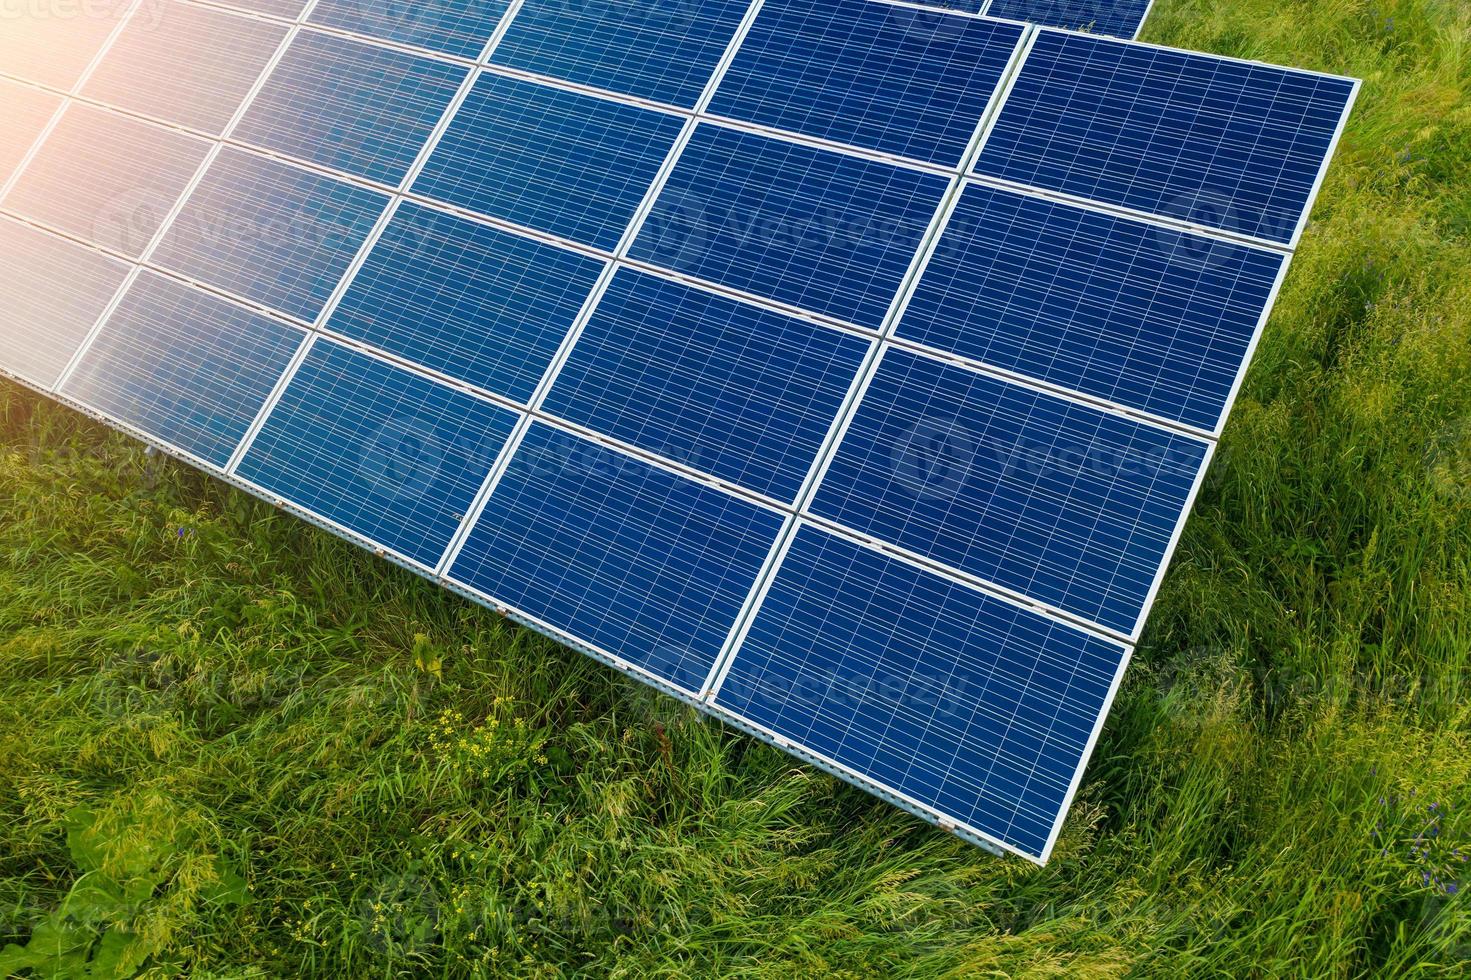 bovenaanzicht van zonne-installatie station. zonnekracht is grote energie om elektrisch te produceren. dit is schone stroom en goede zaken voor het milieu. zonne-energiesysteem is een belangrijke bron van hernieuwbare energie. foto